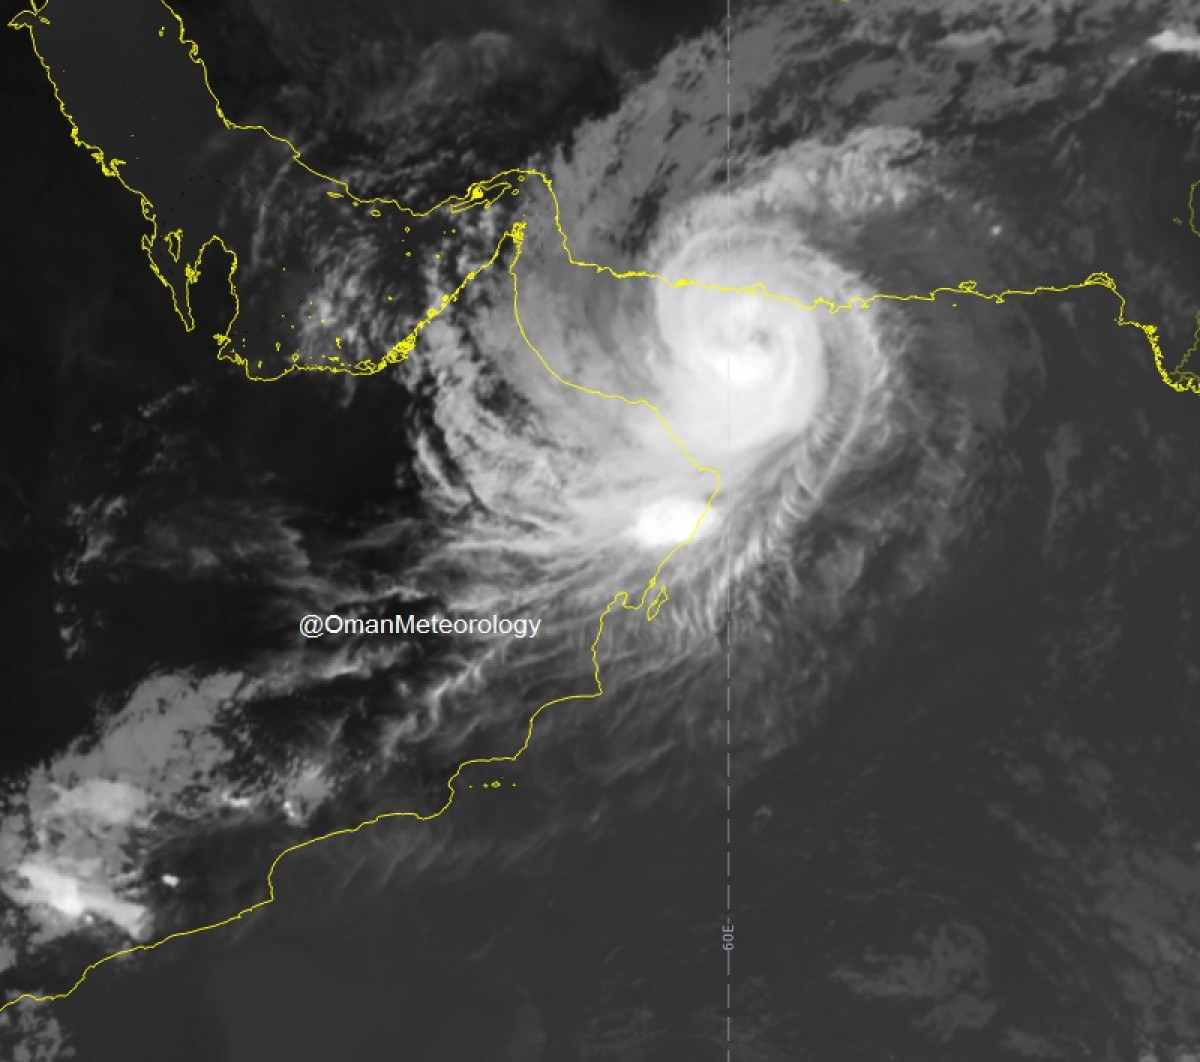  "أخذ الحيطة والحذر" أبوظبي والعين ستتأثر بالحالة المدارية لإعصار شاهين